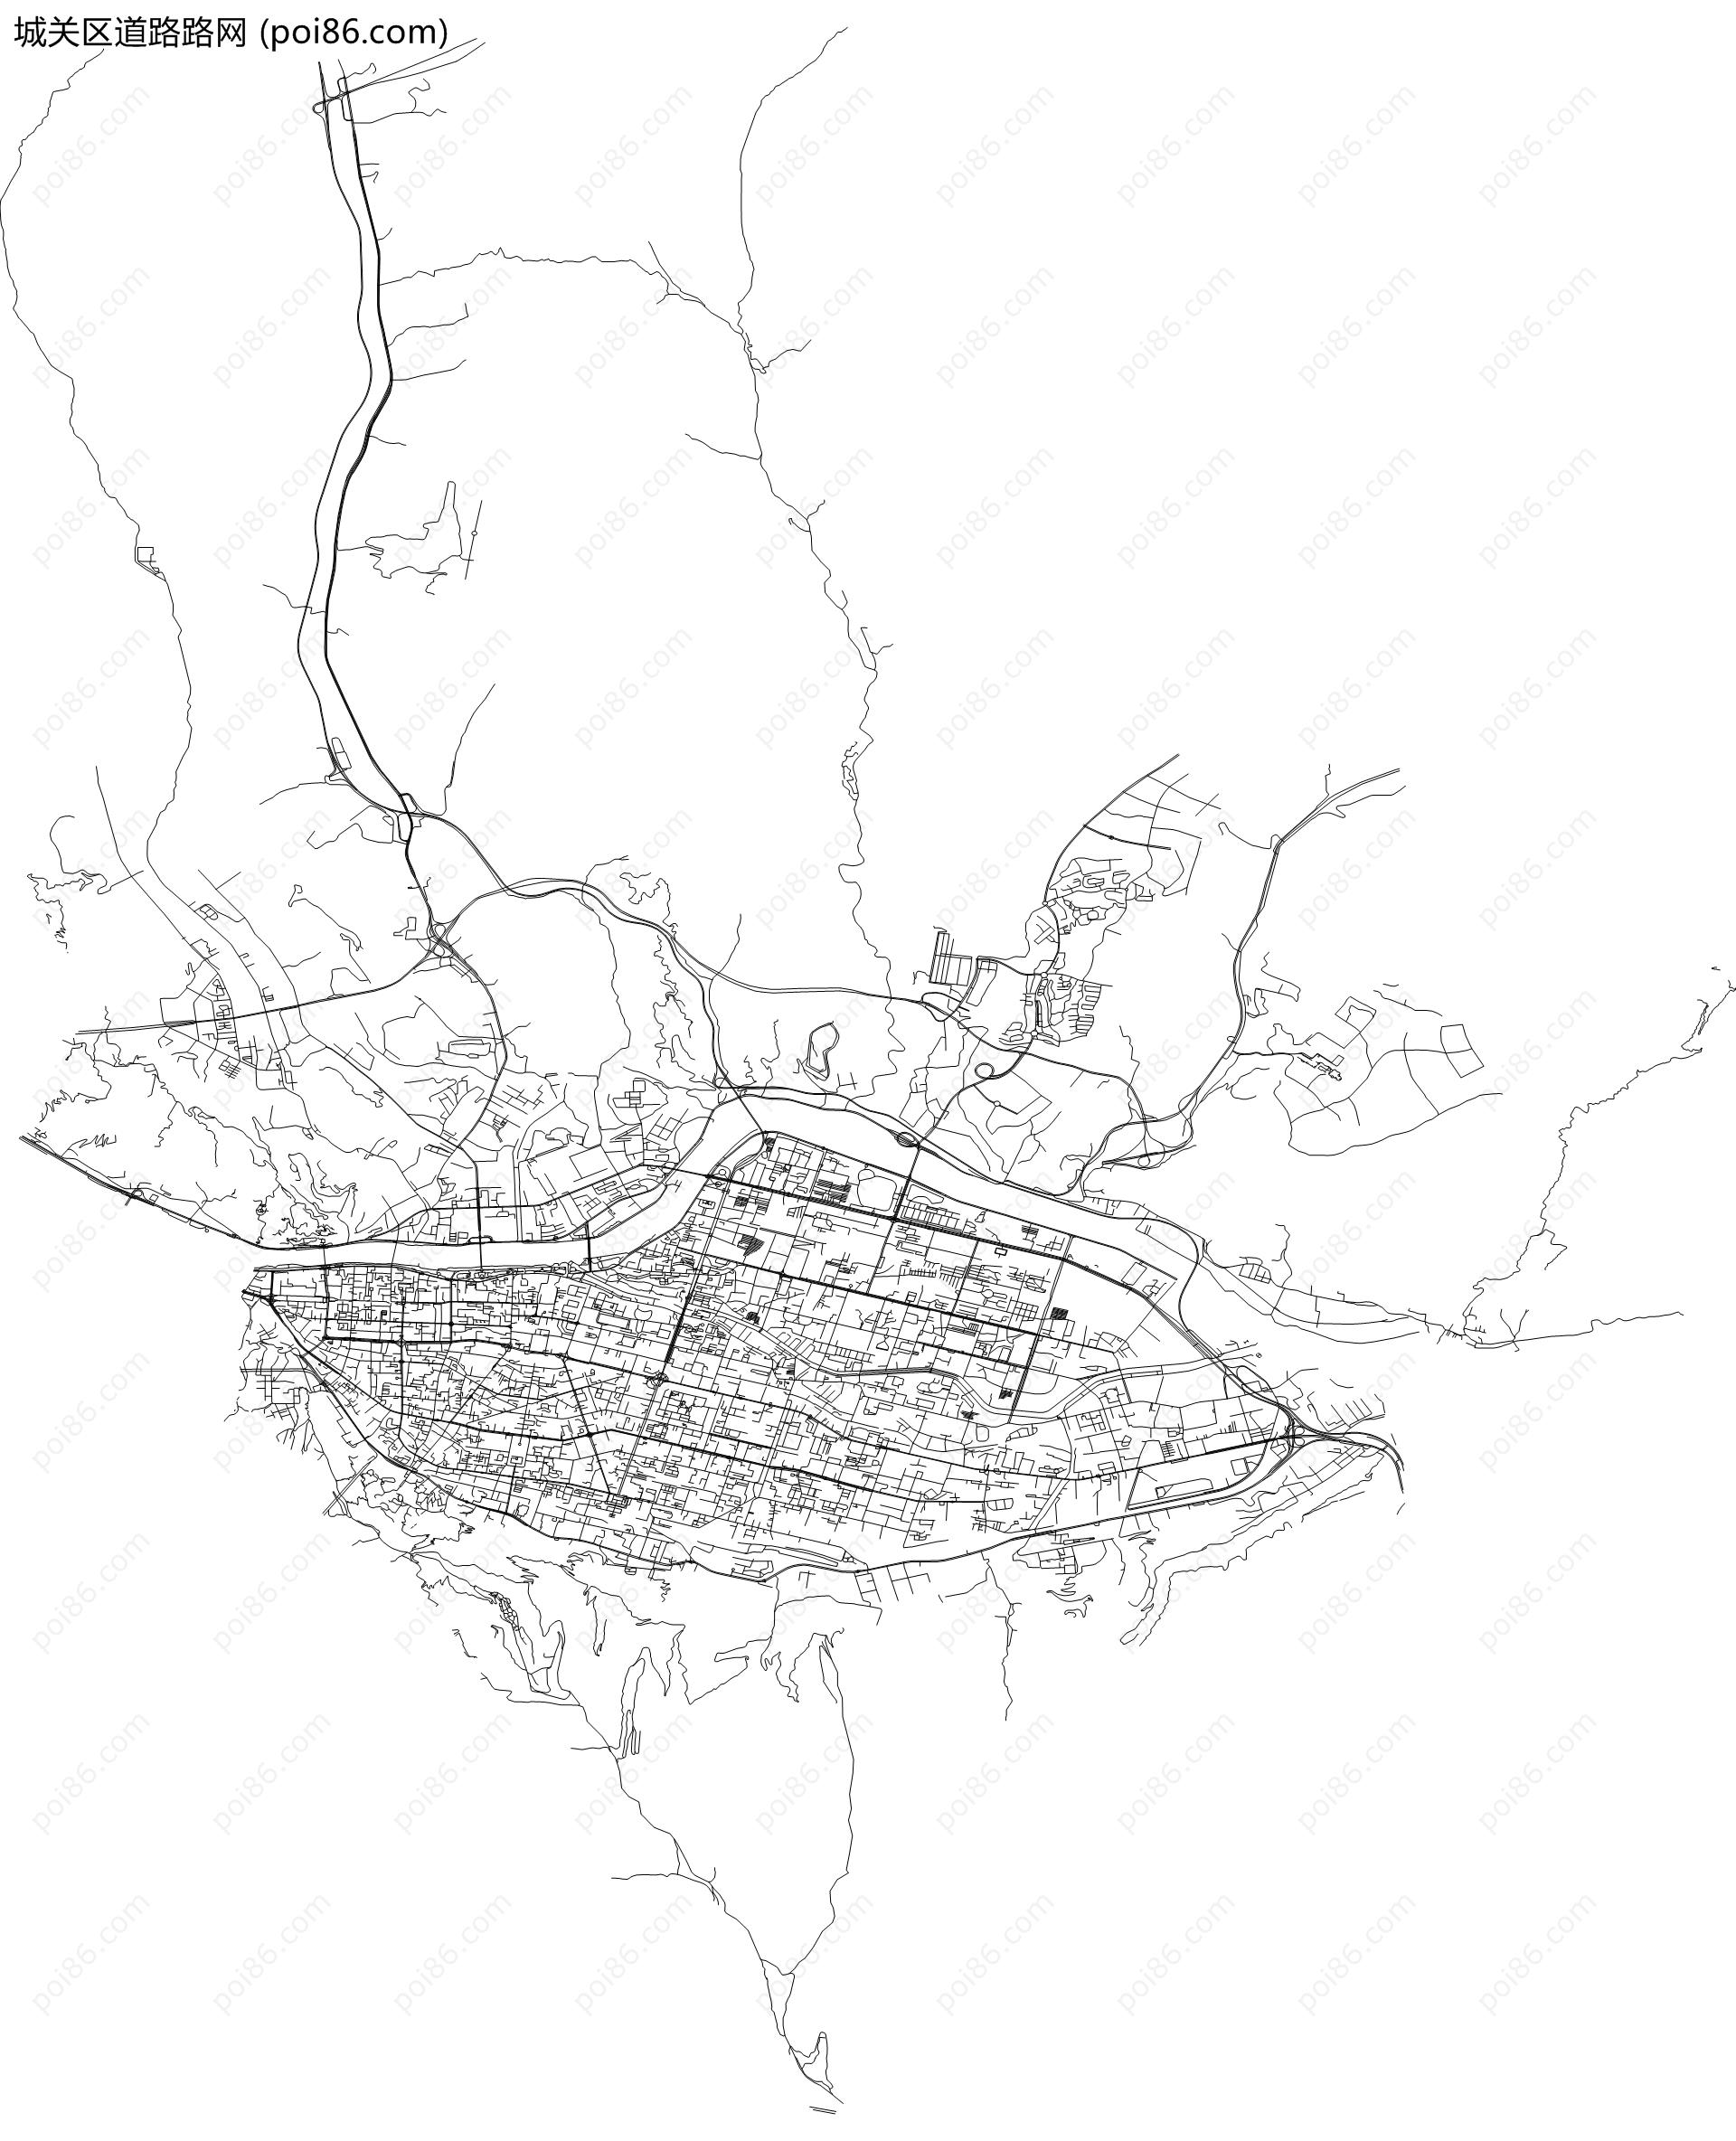 城关区道路路网地图